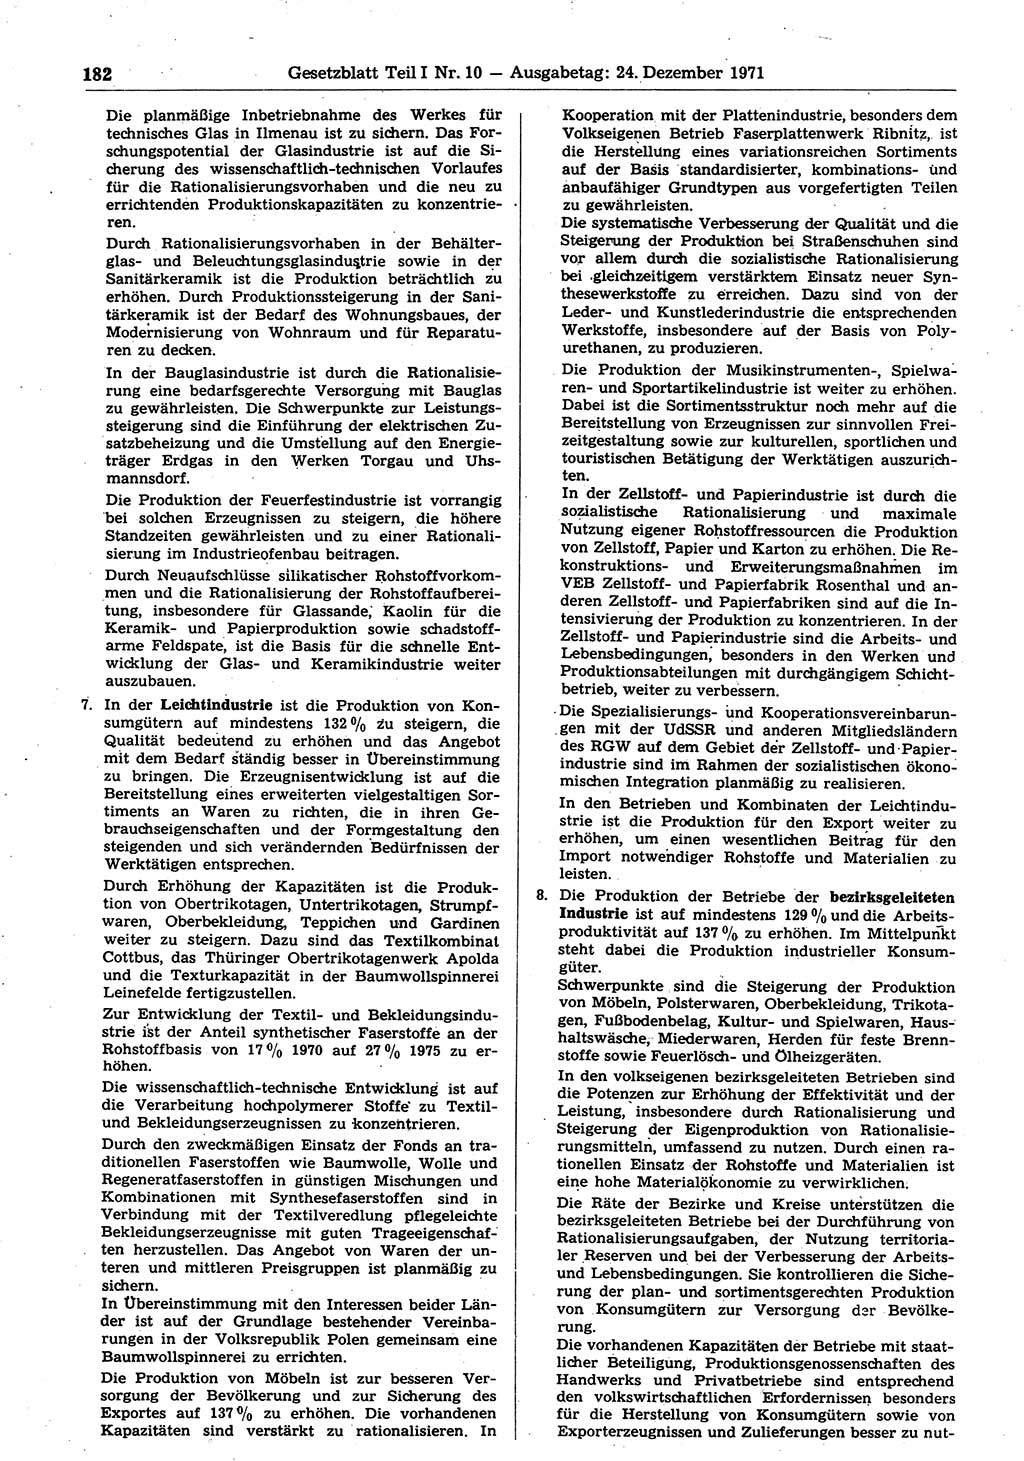 Gesetzblatt (GBl.) der Deutschen Demokratischen Republik (DDR) Teil Ⅰ 1971, Seite 182 (GBl. DDR Ⅰ 1971, S. 182)